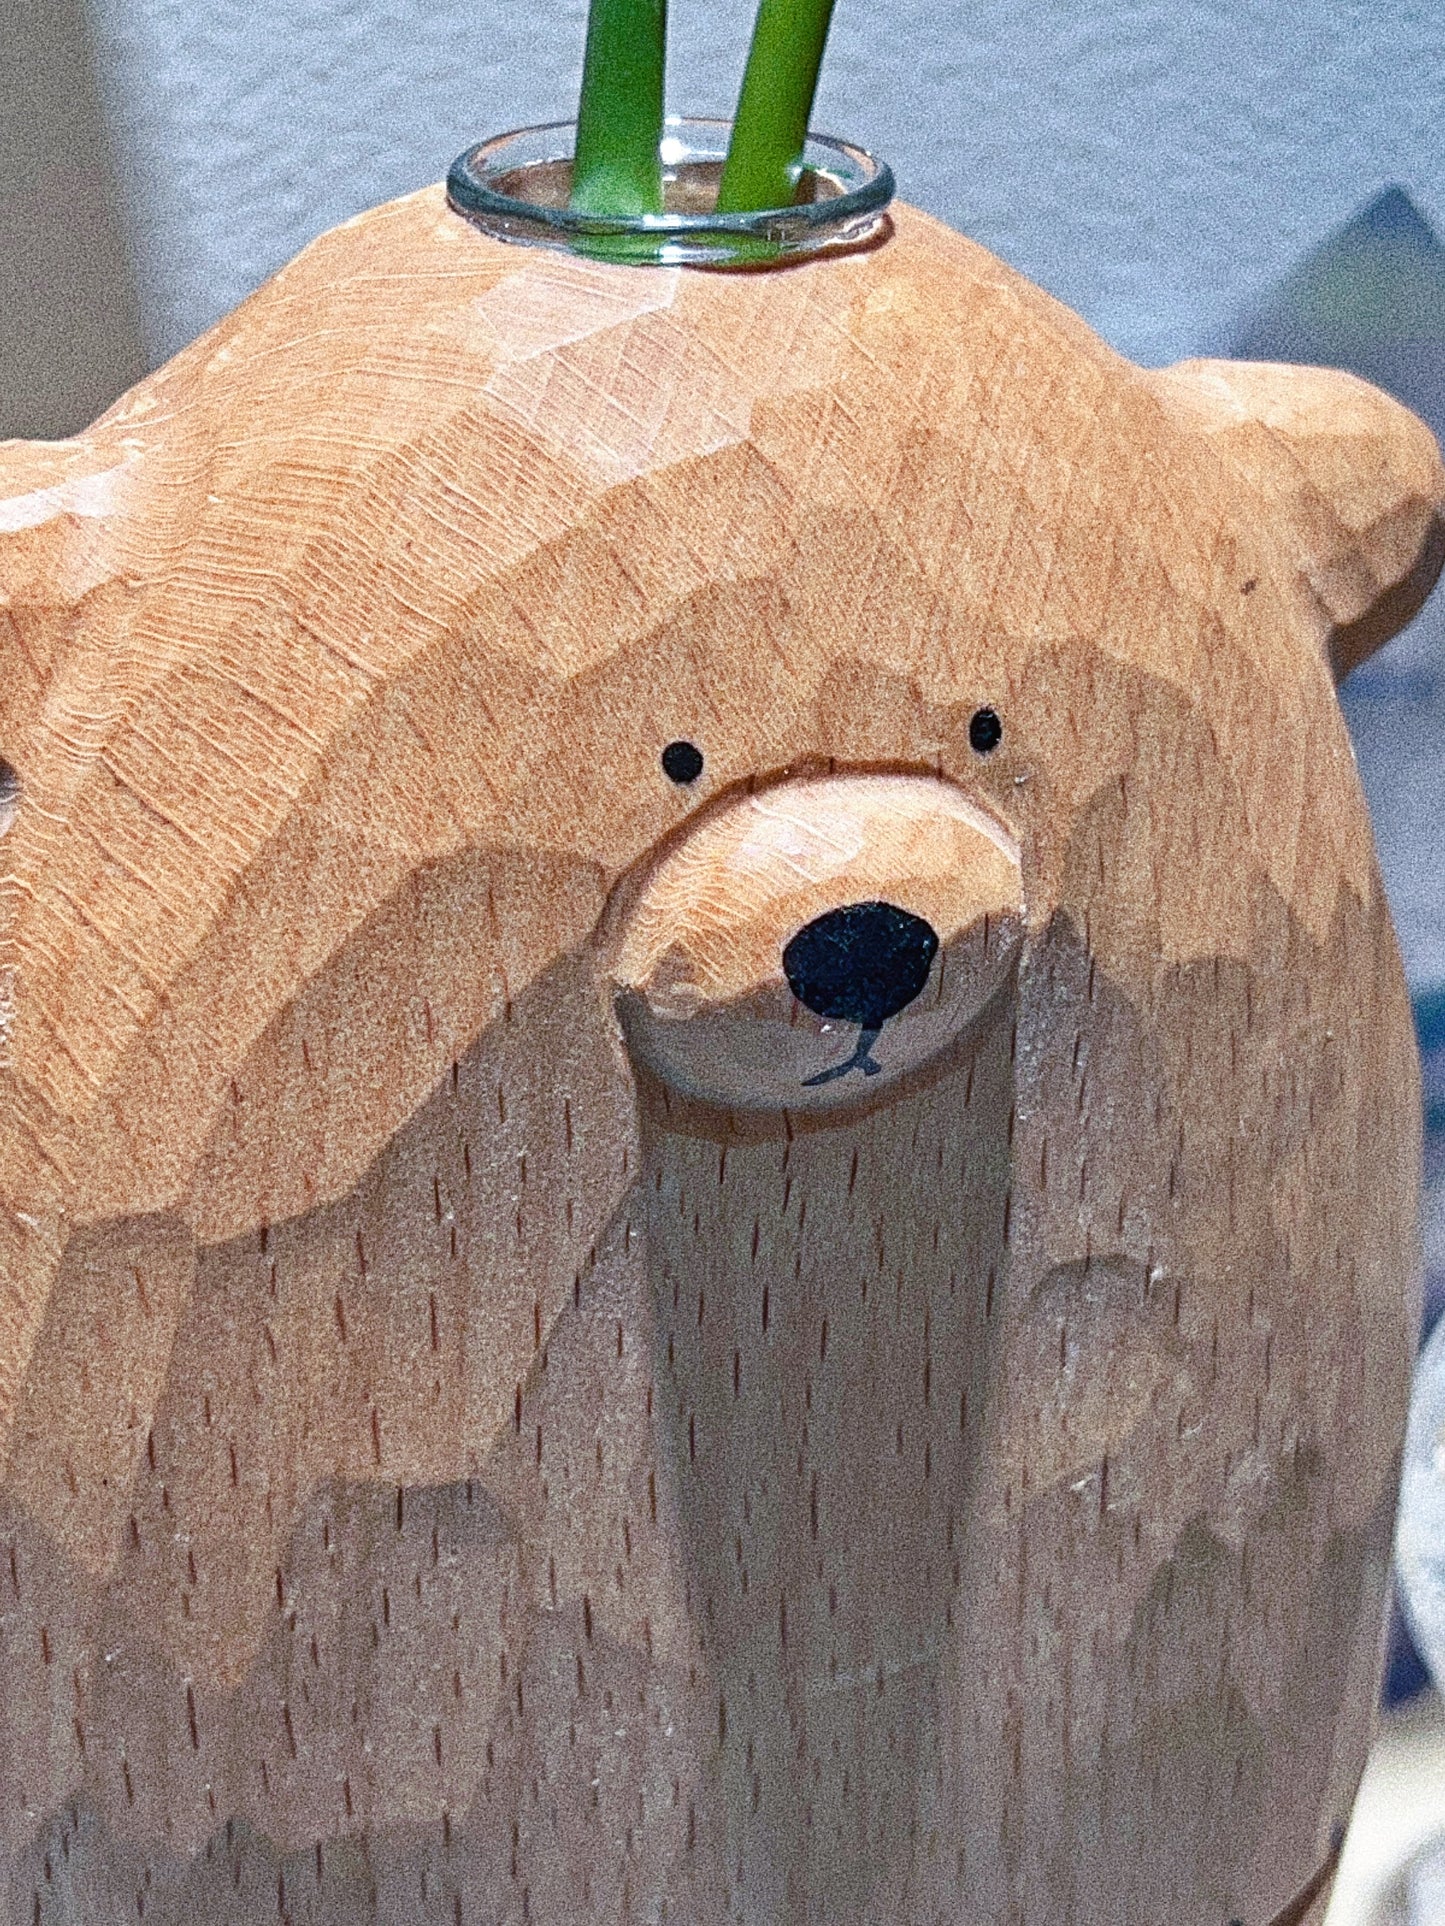 Cute Bear wooden bottle 叫勇仔的熊木樽